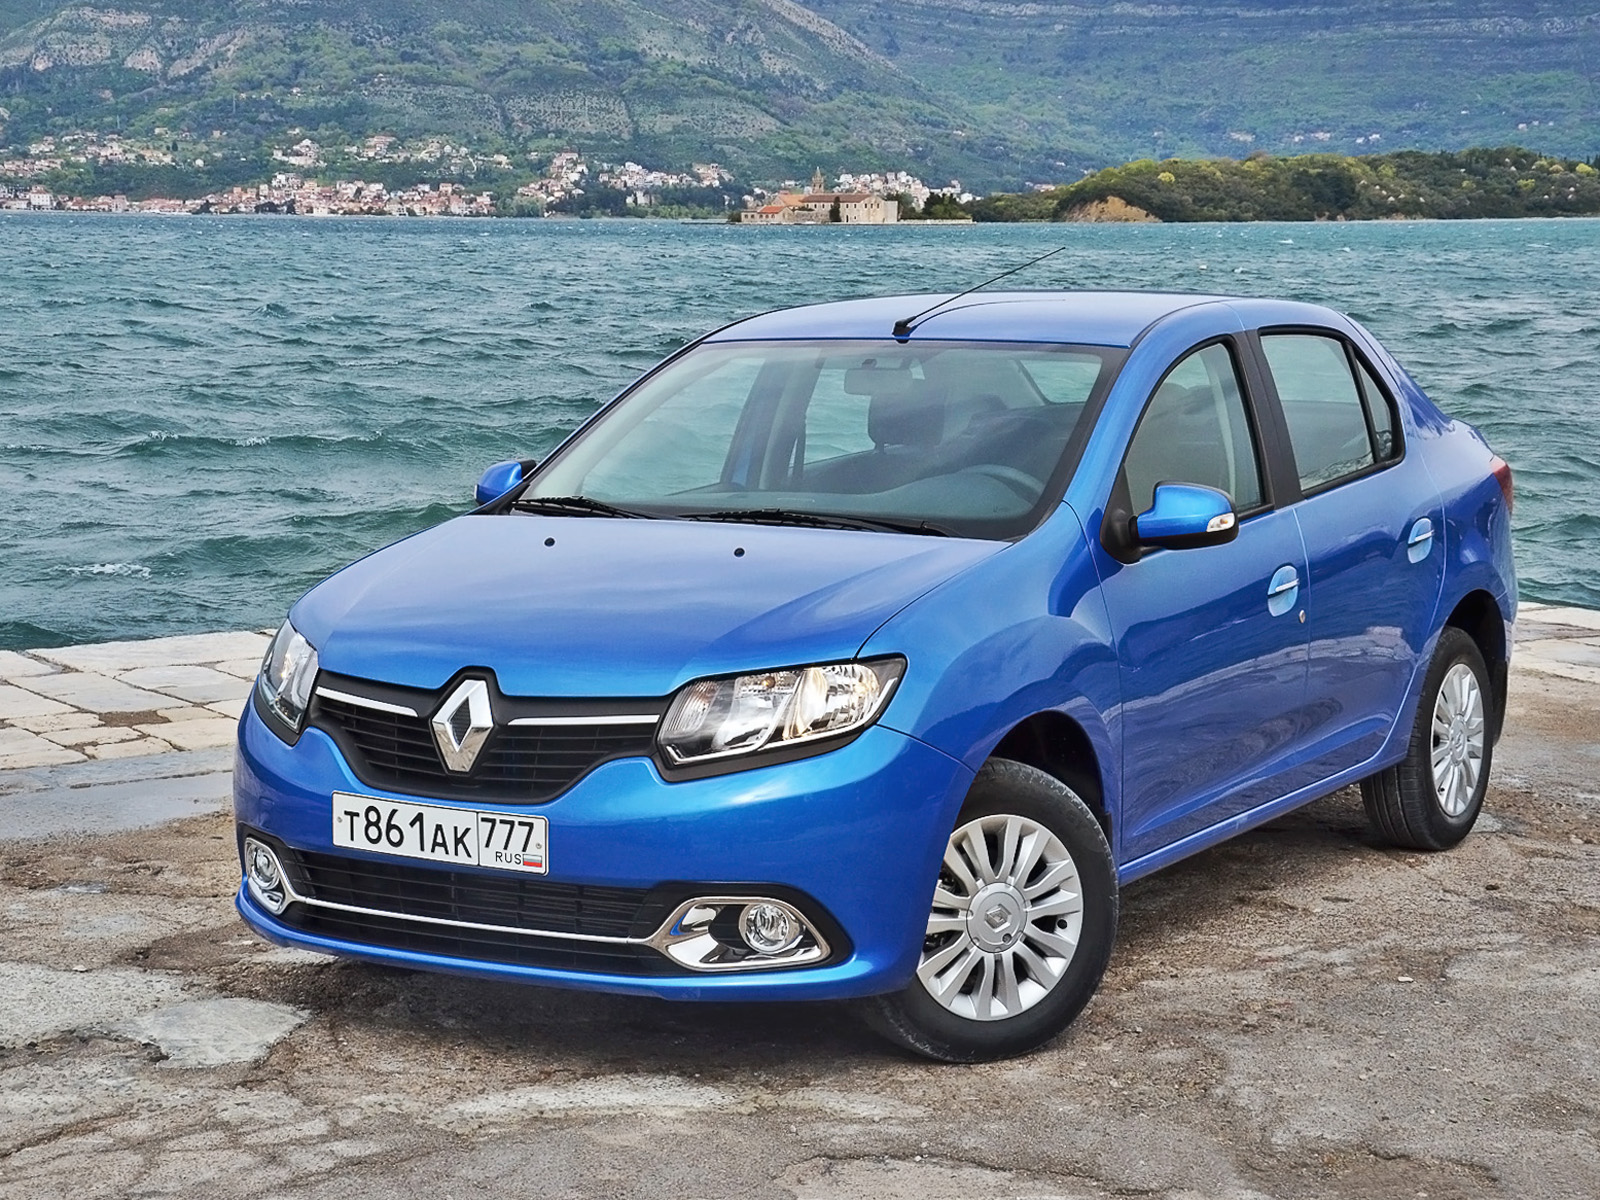 Renault-Nissan может выпускать Logan и Sandero на АВТОВАЗе и "ИжАвто&q...